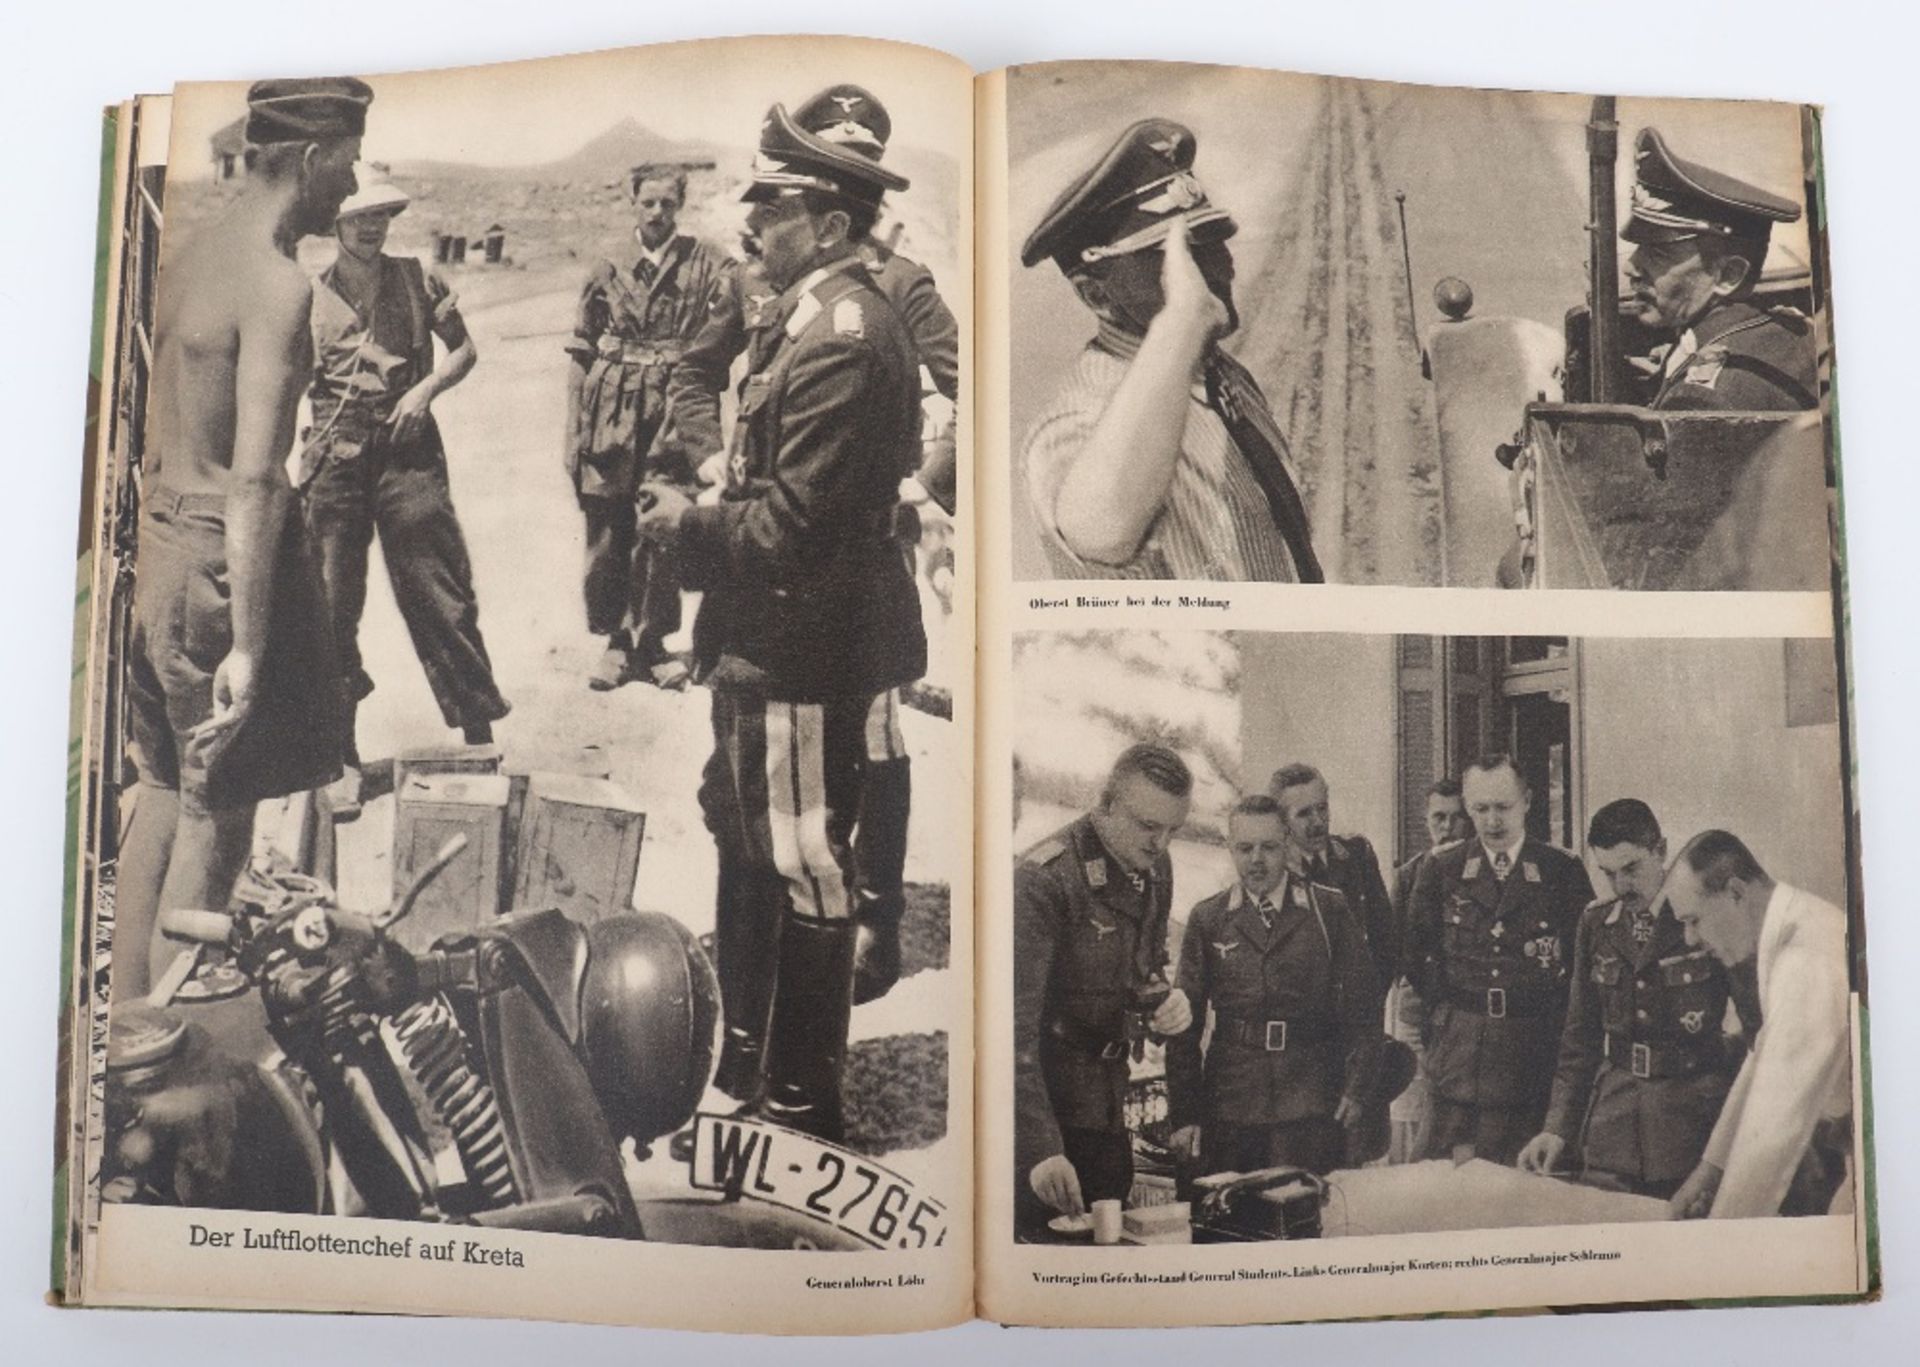 Third Reich Book Kreta Sieg der Kuhnsten von Heldenkampf den Fallschirmjager - Image 4 of 5